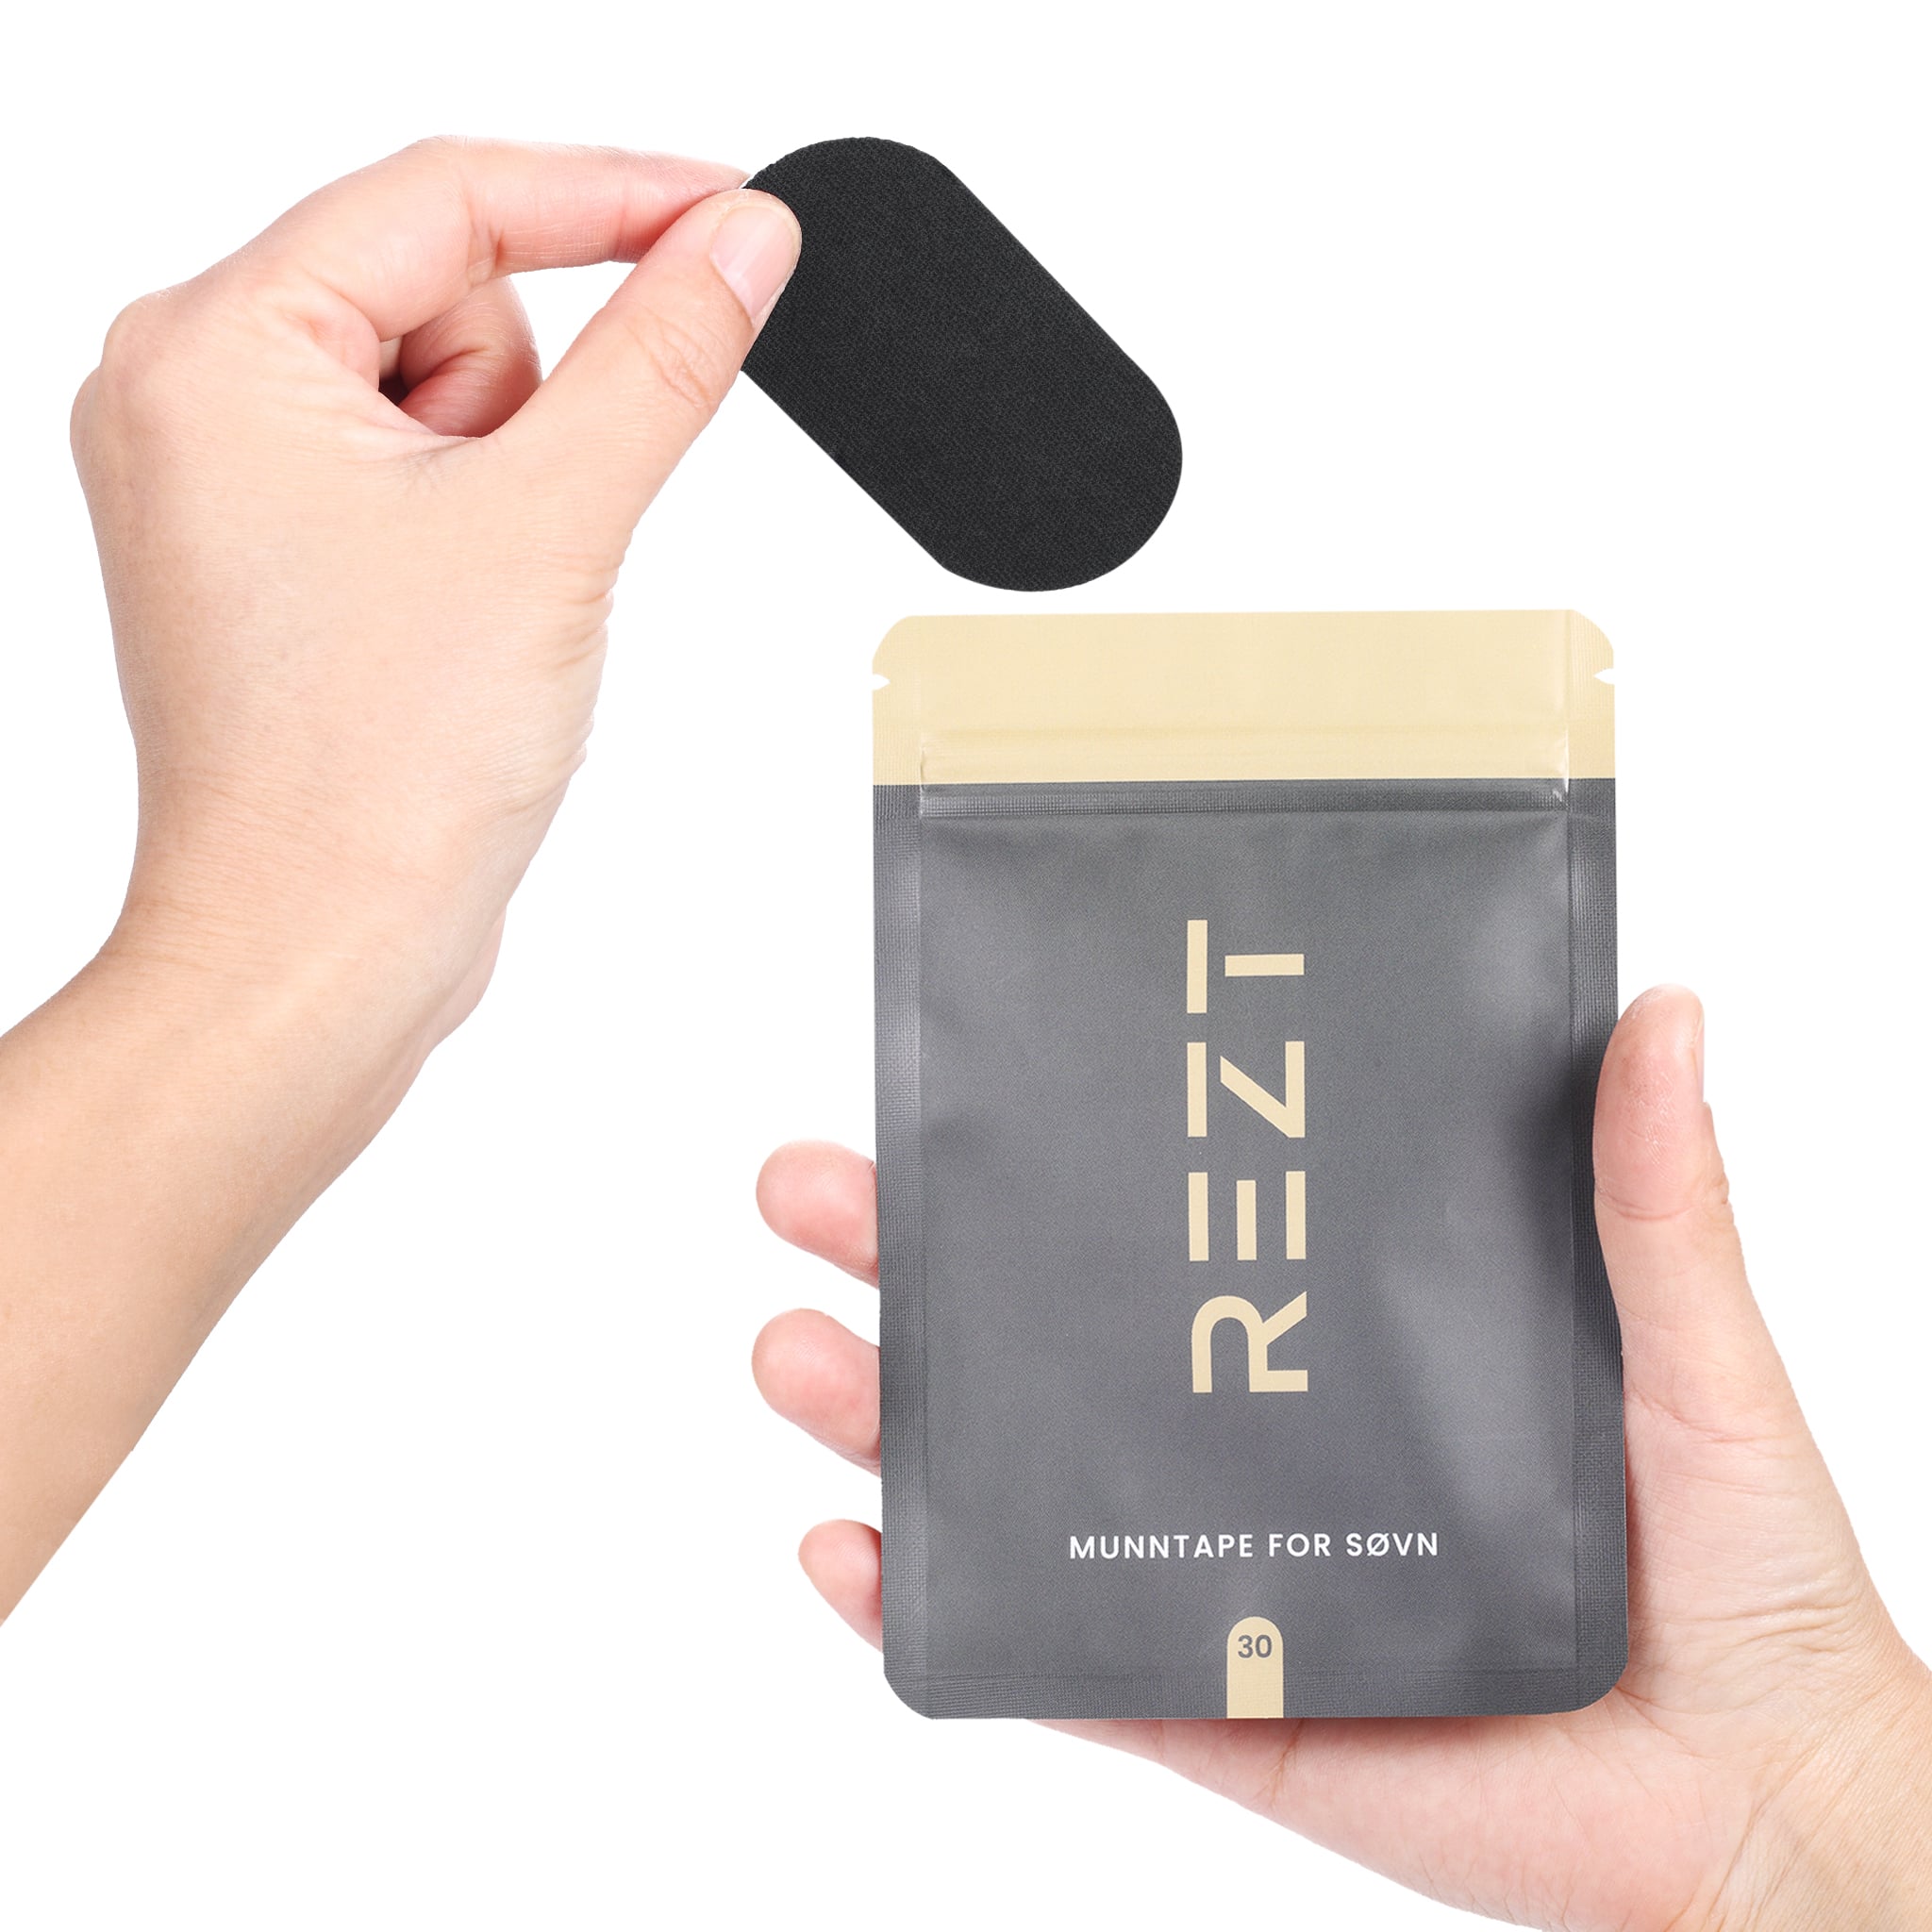 REZT munntape - Hånd som holder svart stripe med grå og gullfarget emballasje i bakgrunnen.